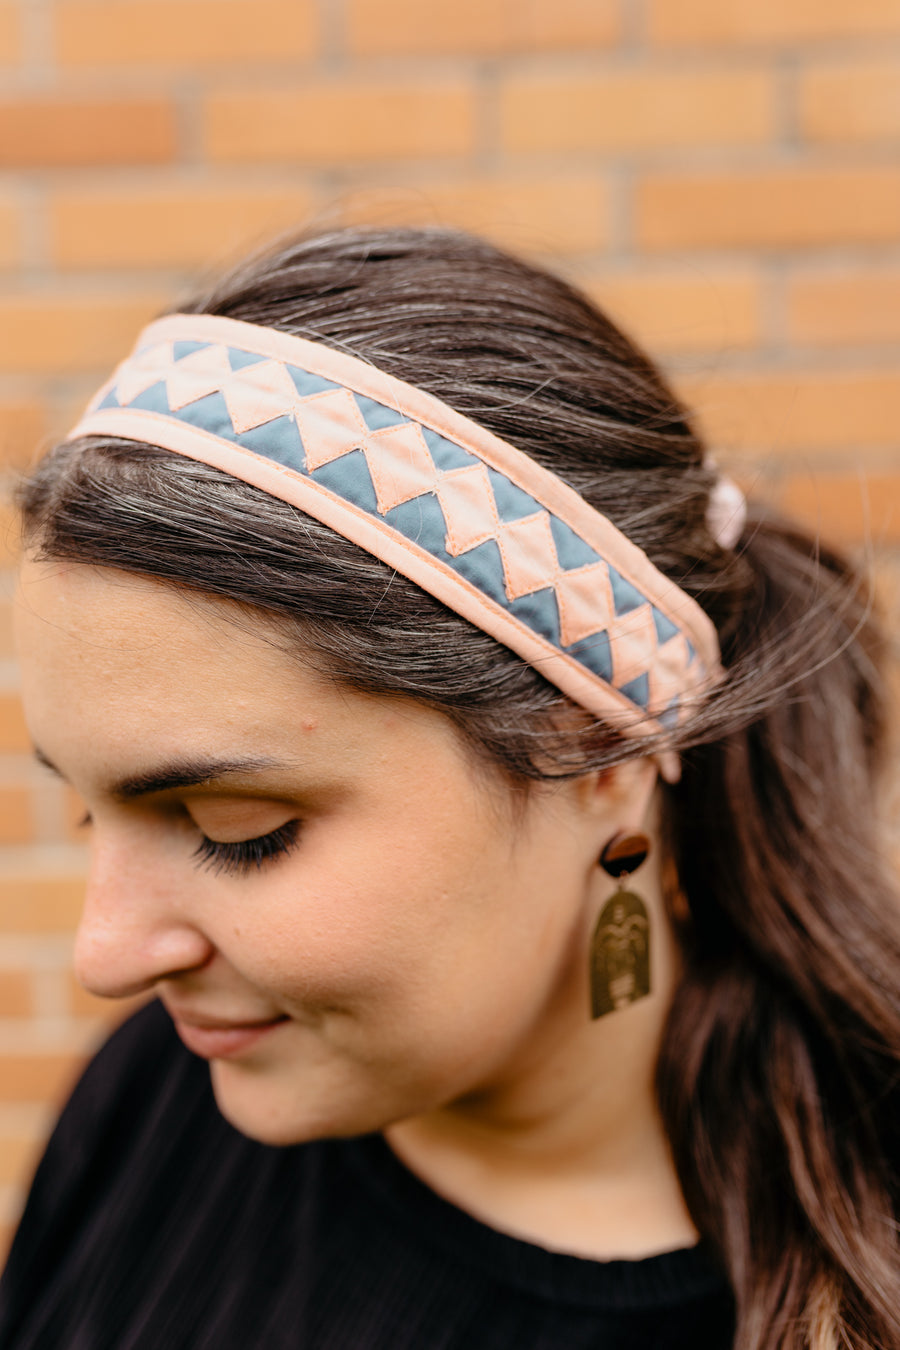 Handcrafted Headband